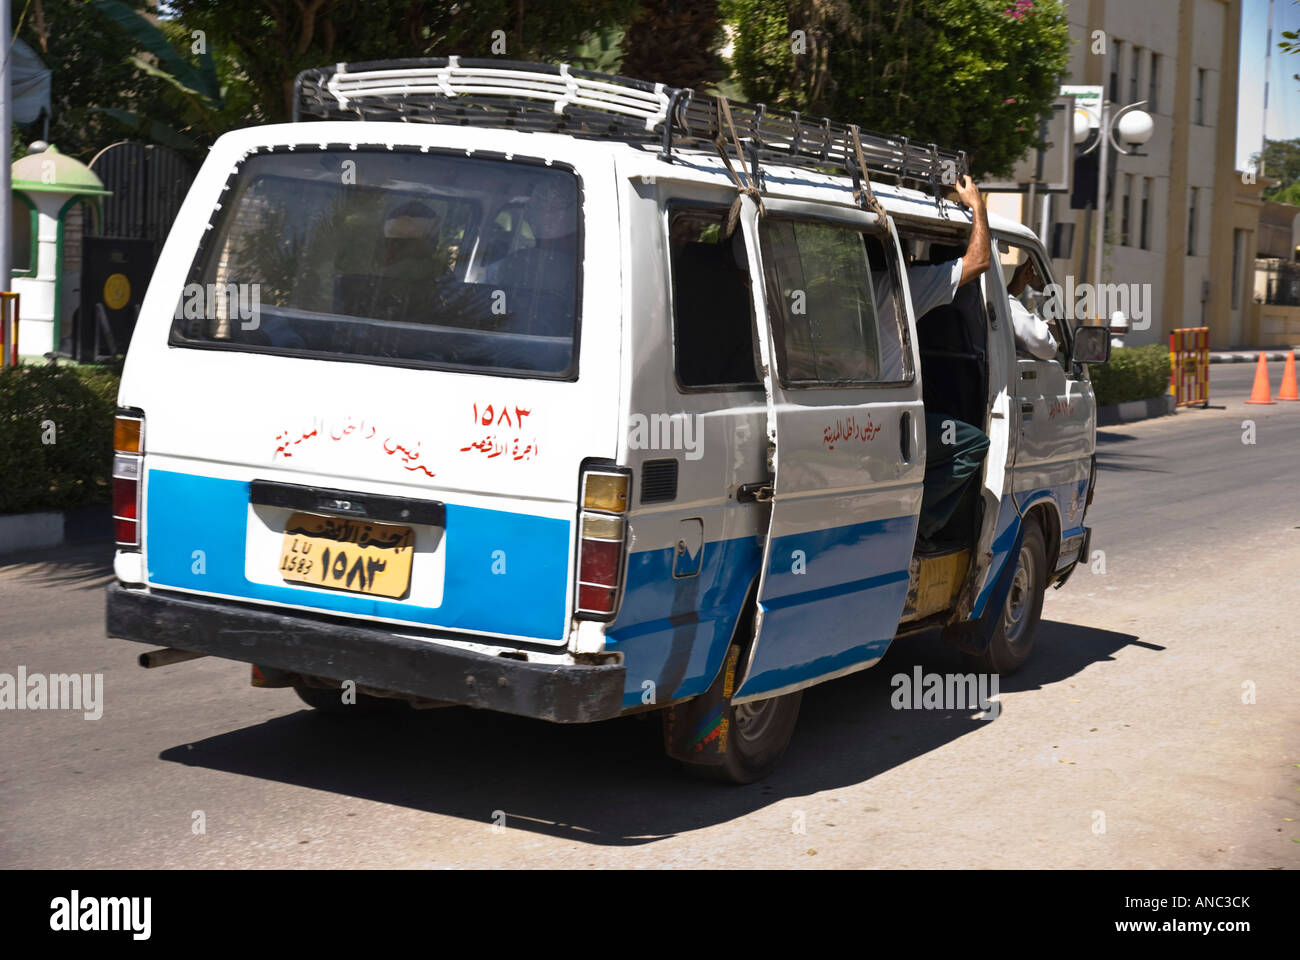 Egipto Luxor - taxi minibús para uso local no turistas Foto de stock